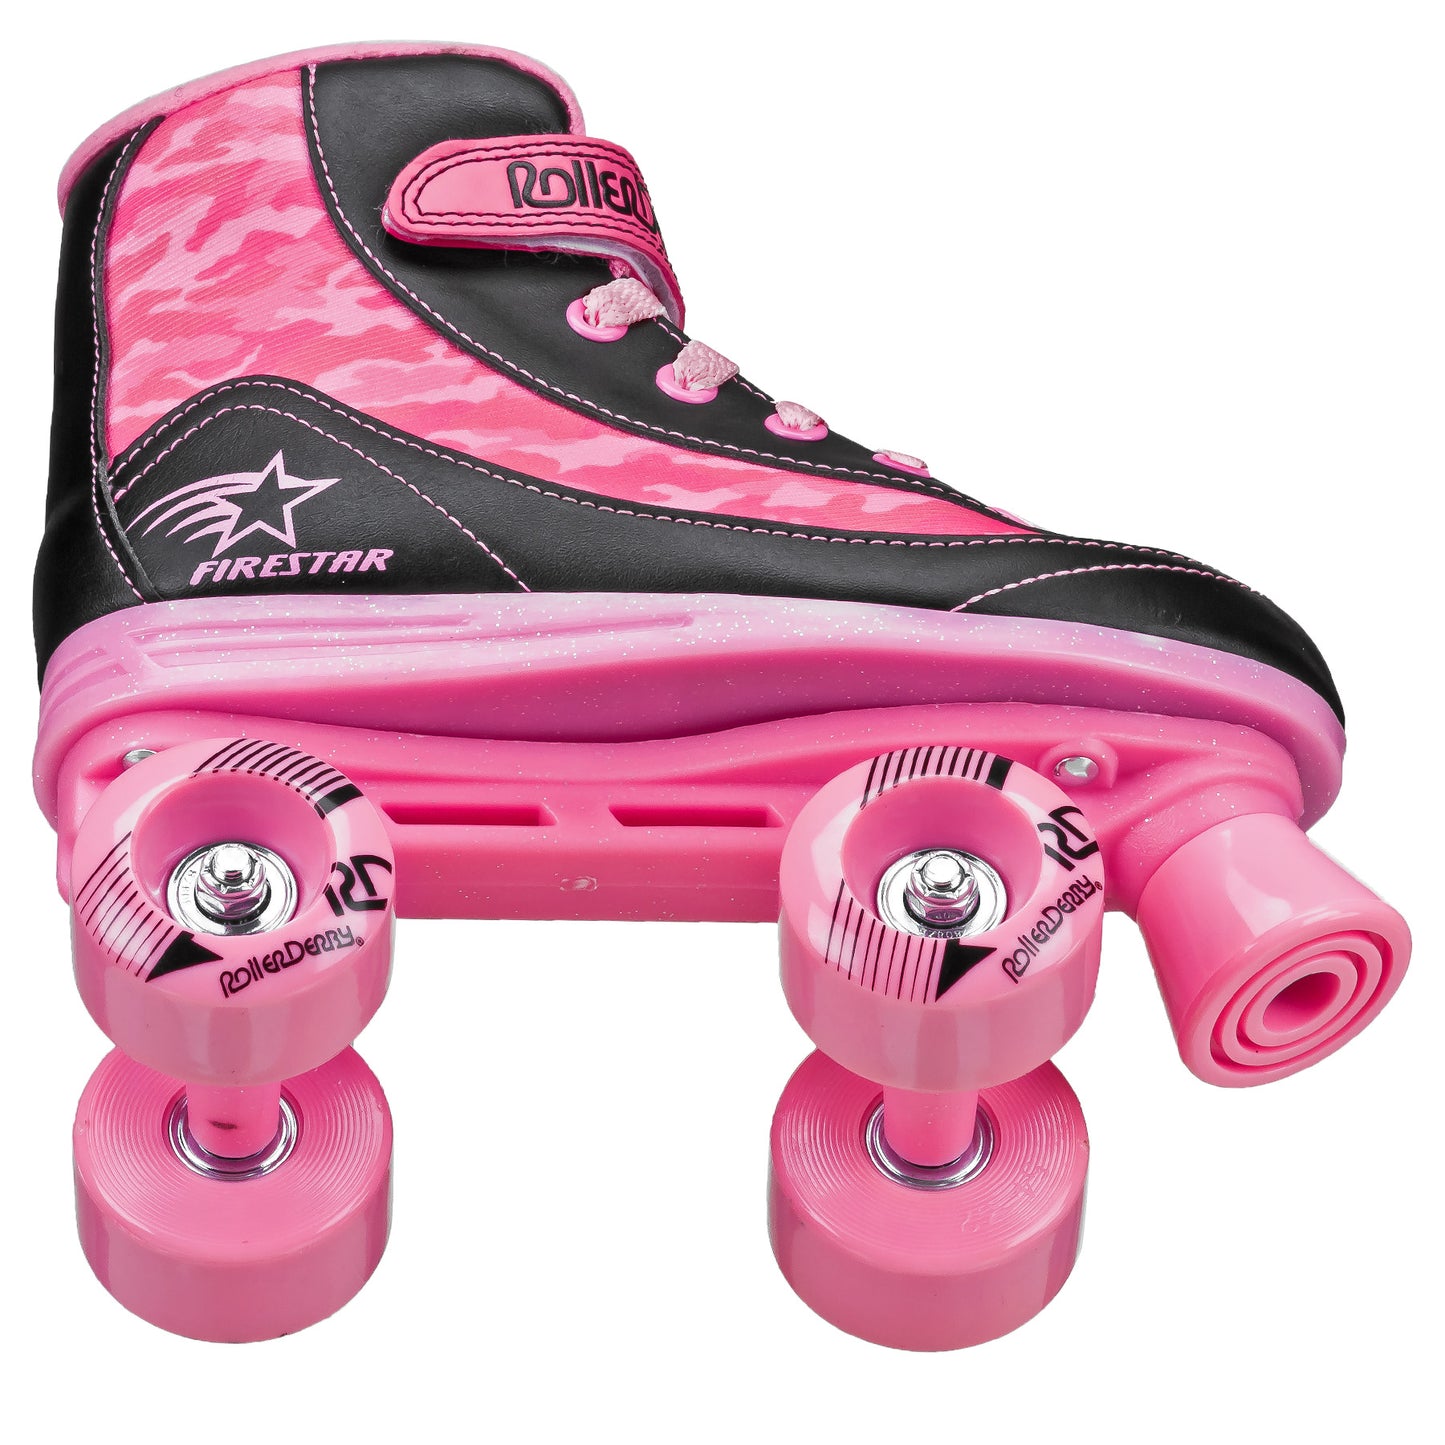 FireStar Youth Girl's Roller Skates